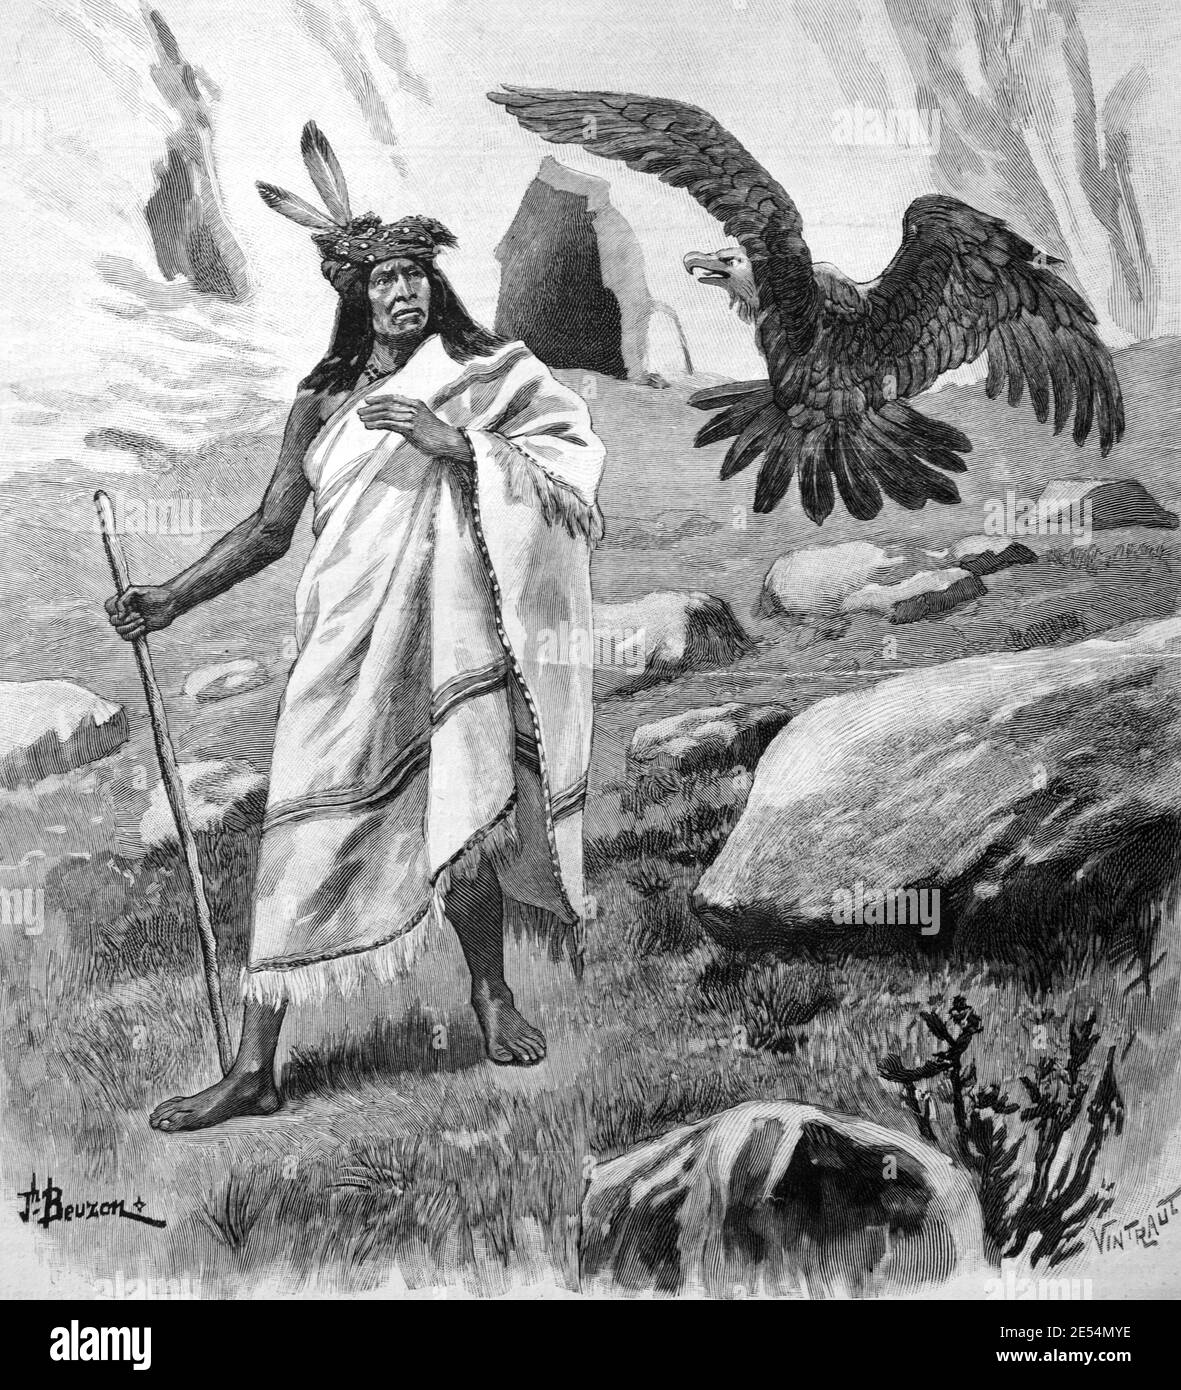 Eagle Formet en garde contre une tempête pour les Indiens Pima ou les Indiens d'Amérique En Arizona Etats-Unis ou Etats-Unis 1904 Vintage Illustration ou Gravure Banque D'Images